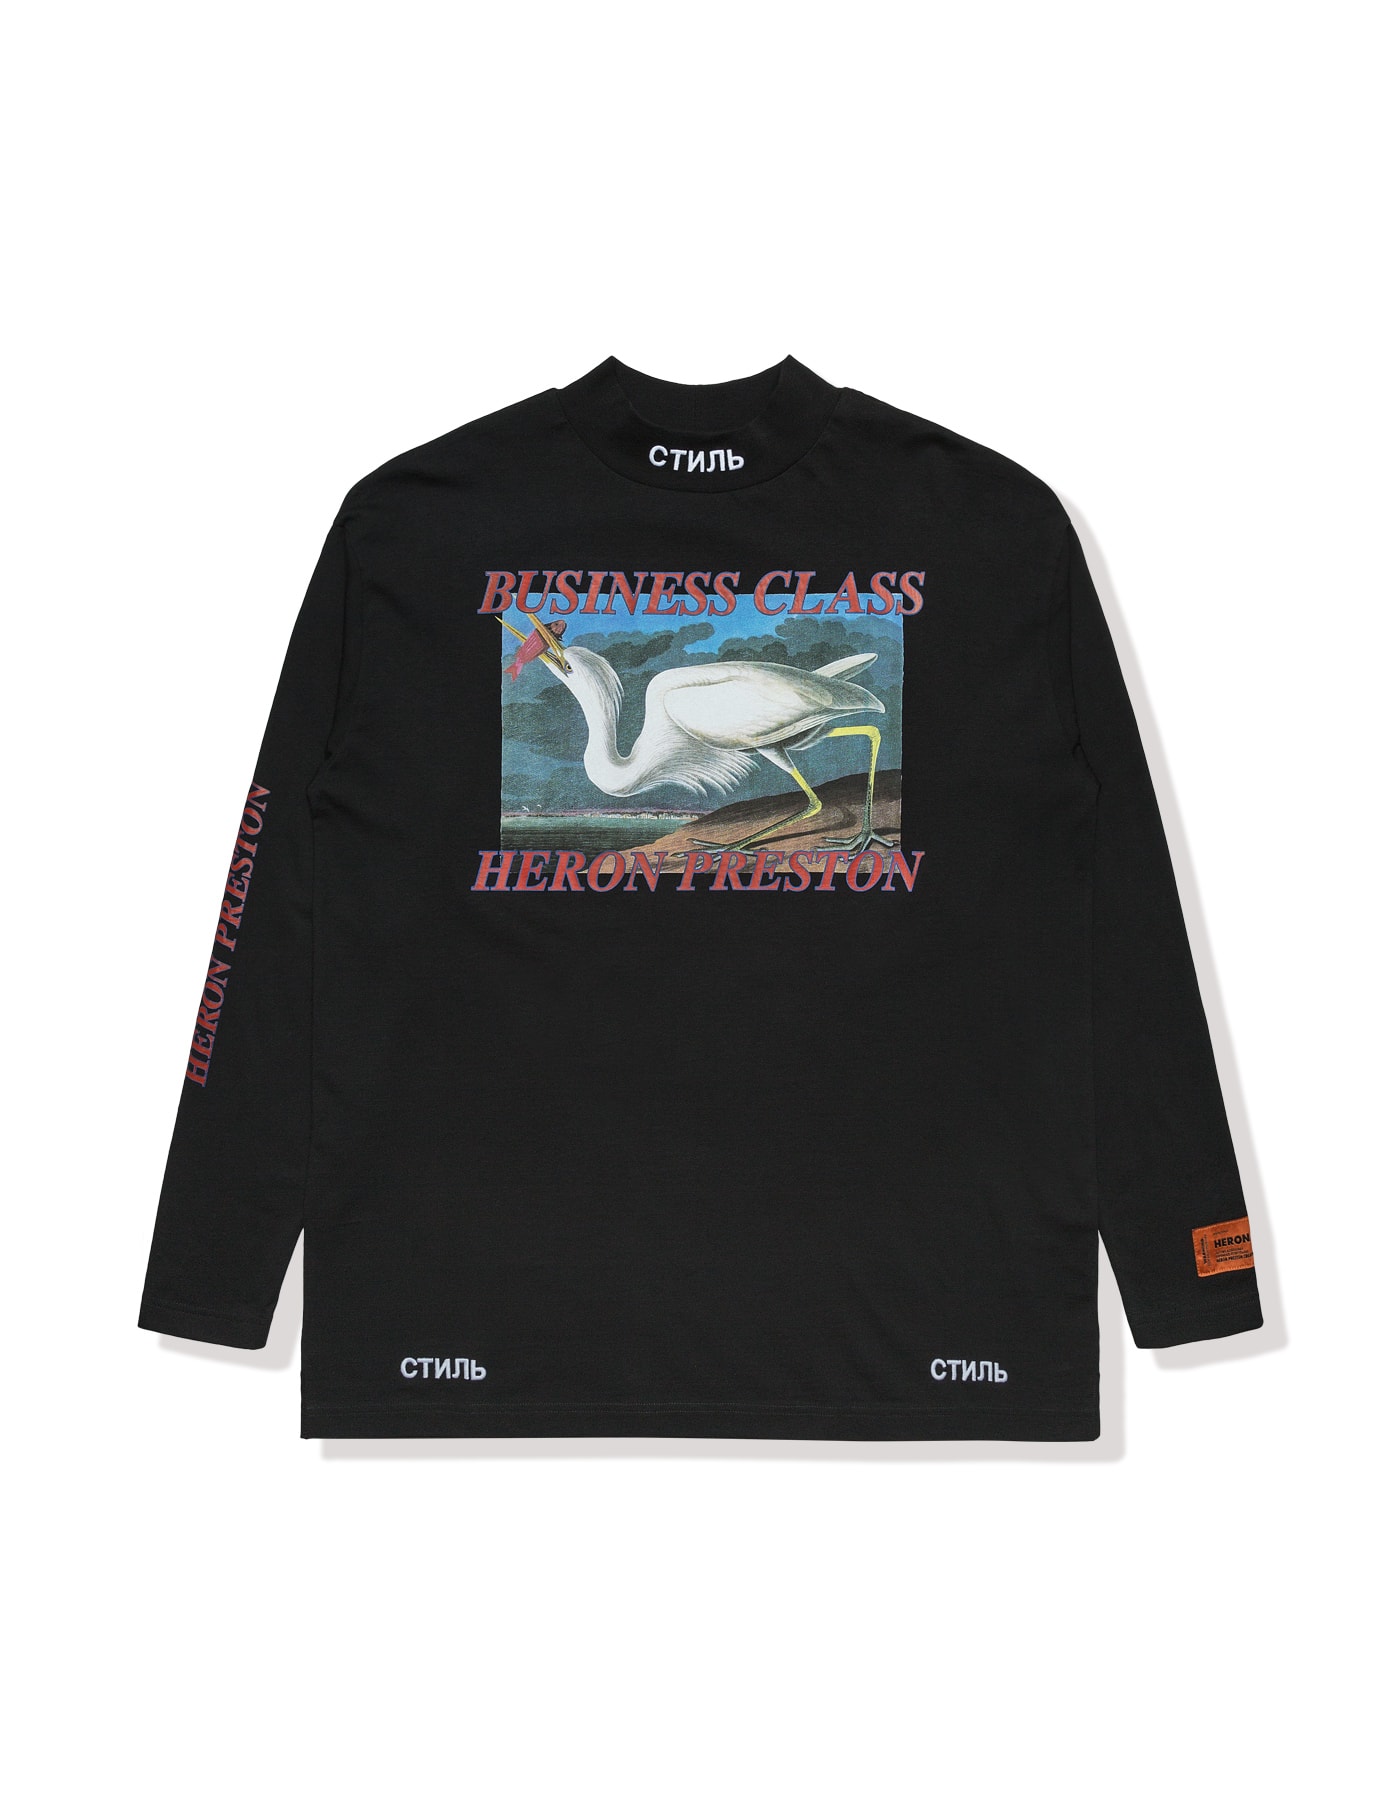 Heron Preston 將推出 HBX 限定服飾系列「Business Class」